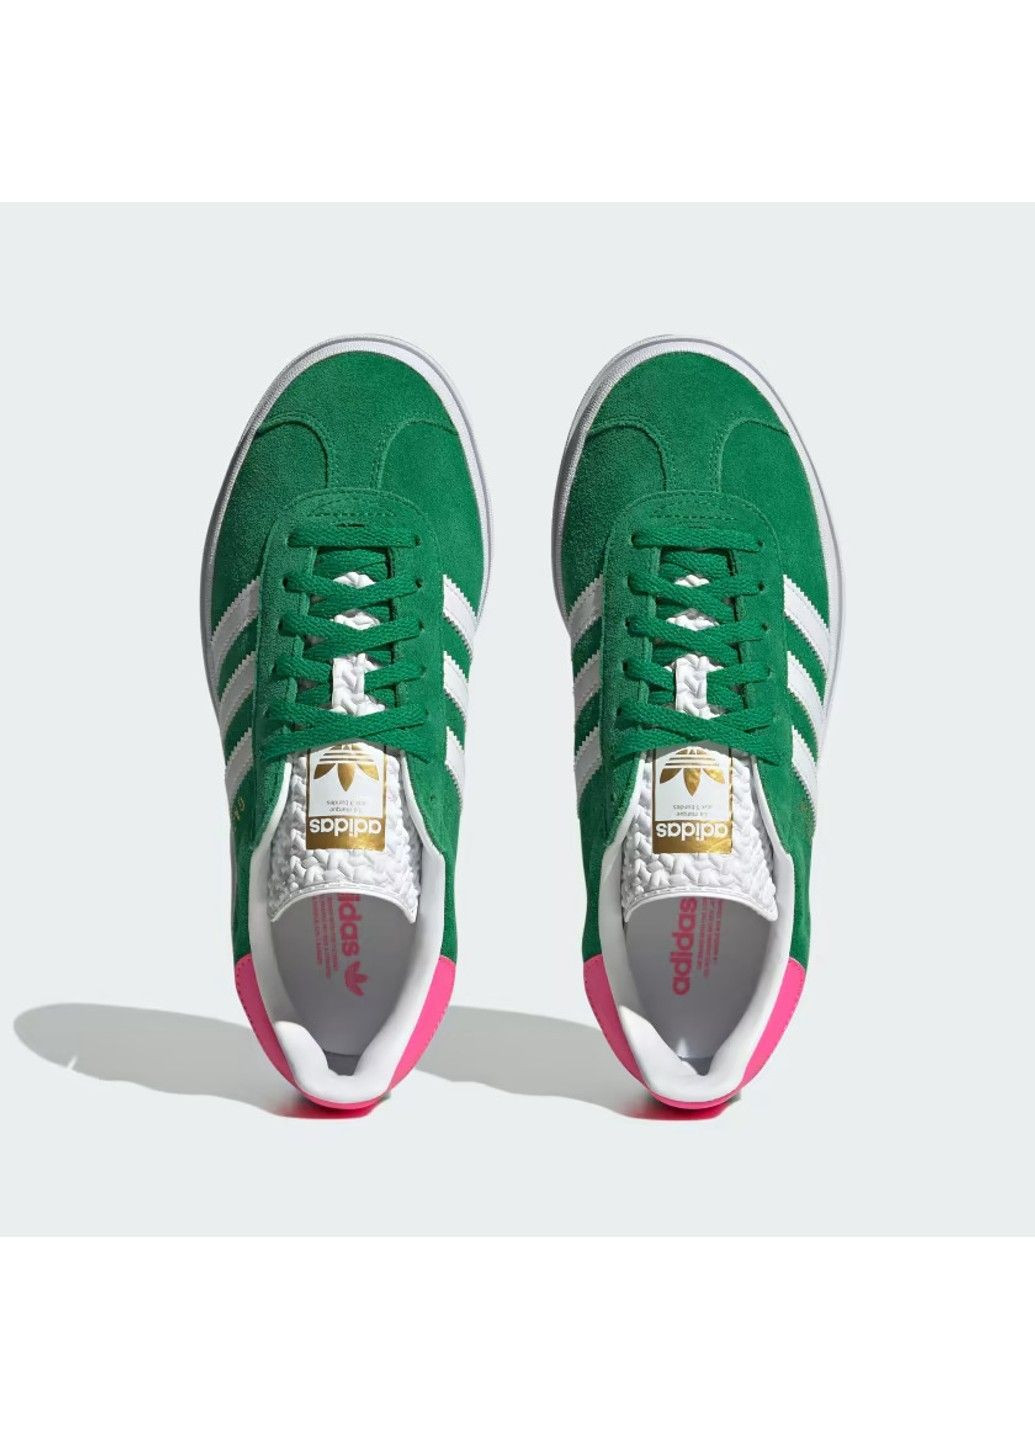 Зеленые демисезонные gazelle bold green lucid pink wmns adidas IG3136